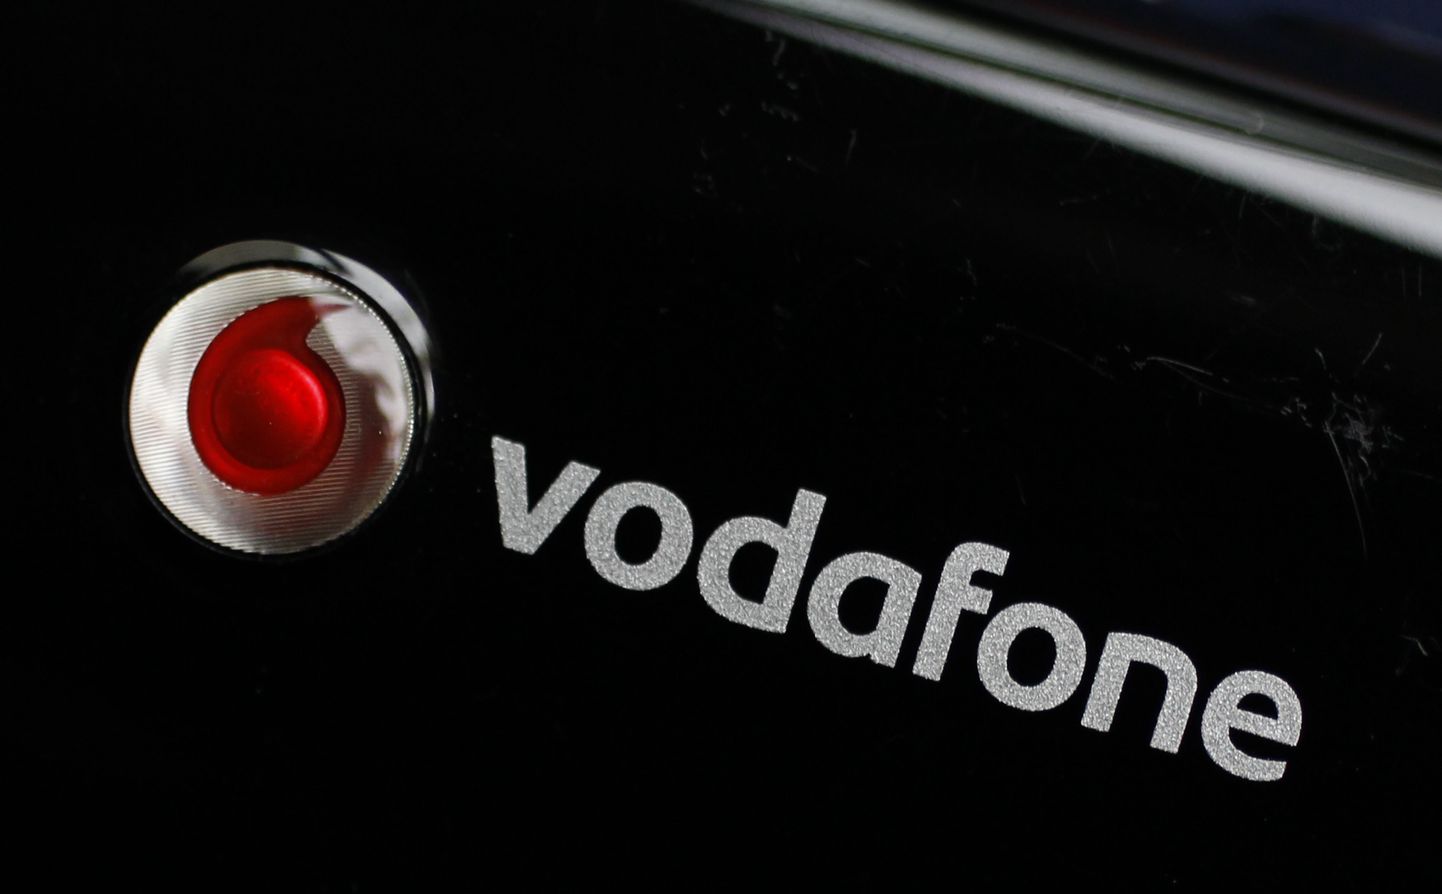 Vodafone'i logo.